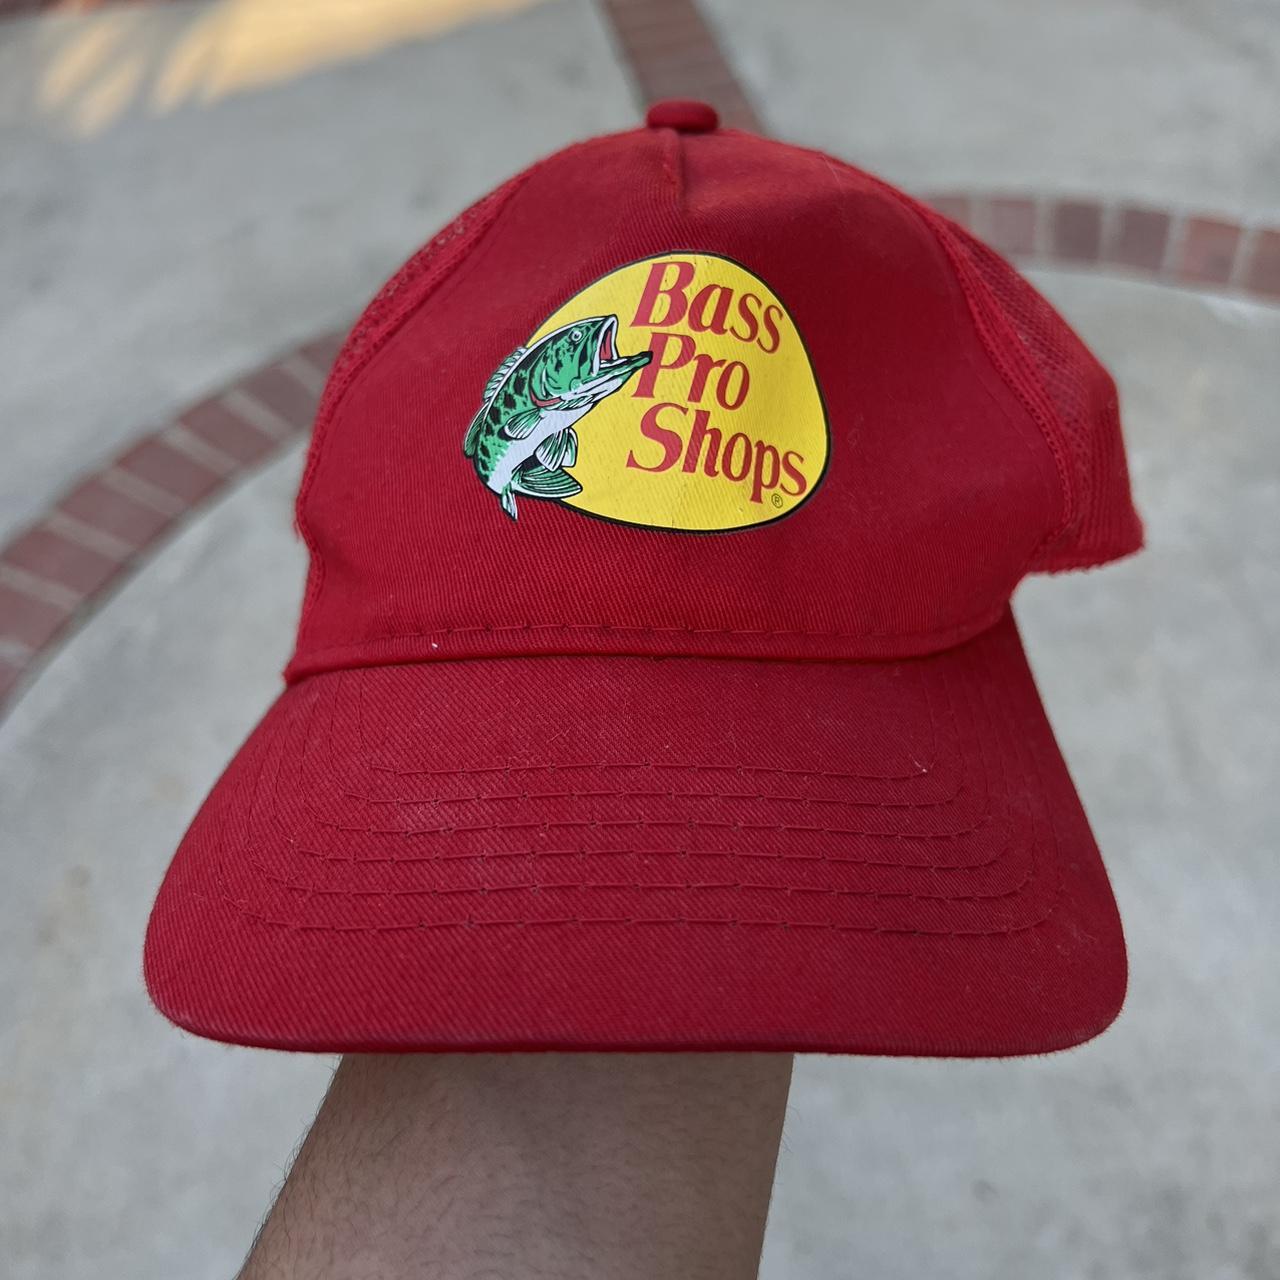 Bass pro shop trucker hat -send offers - Depop